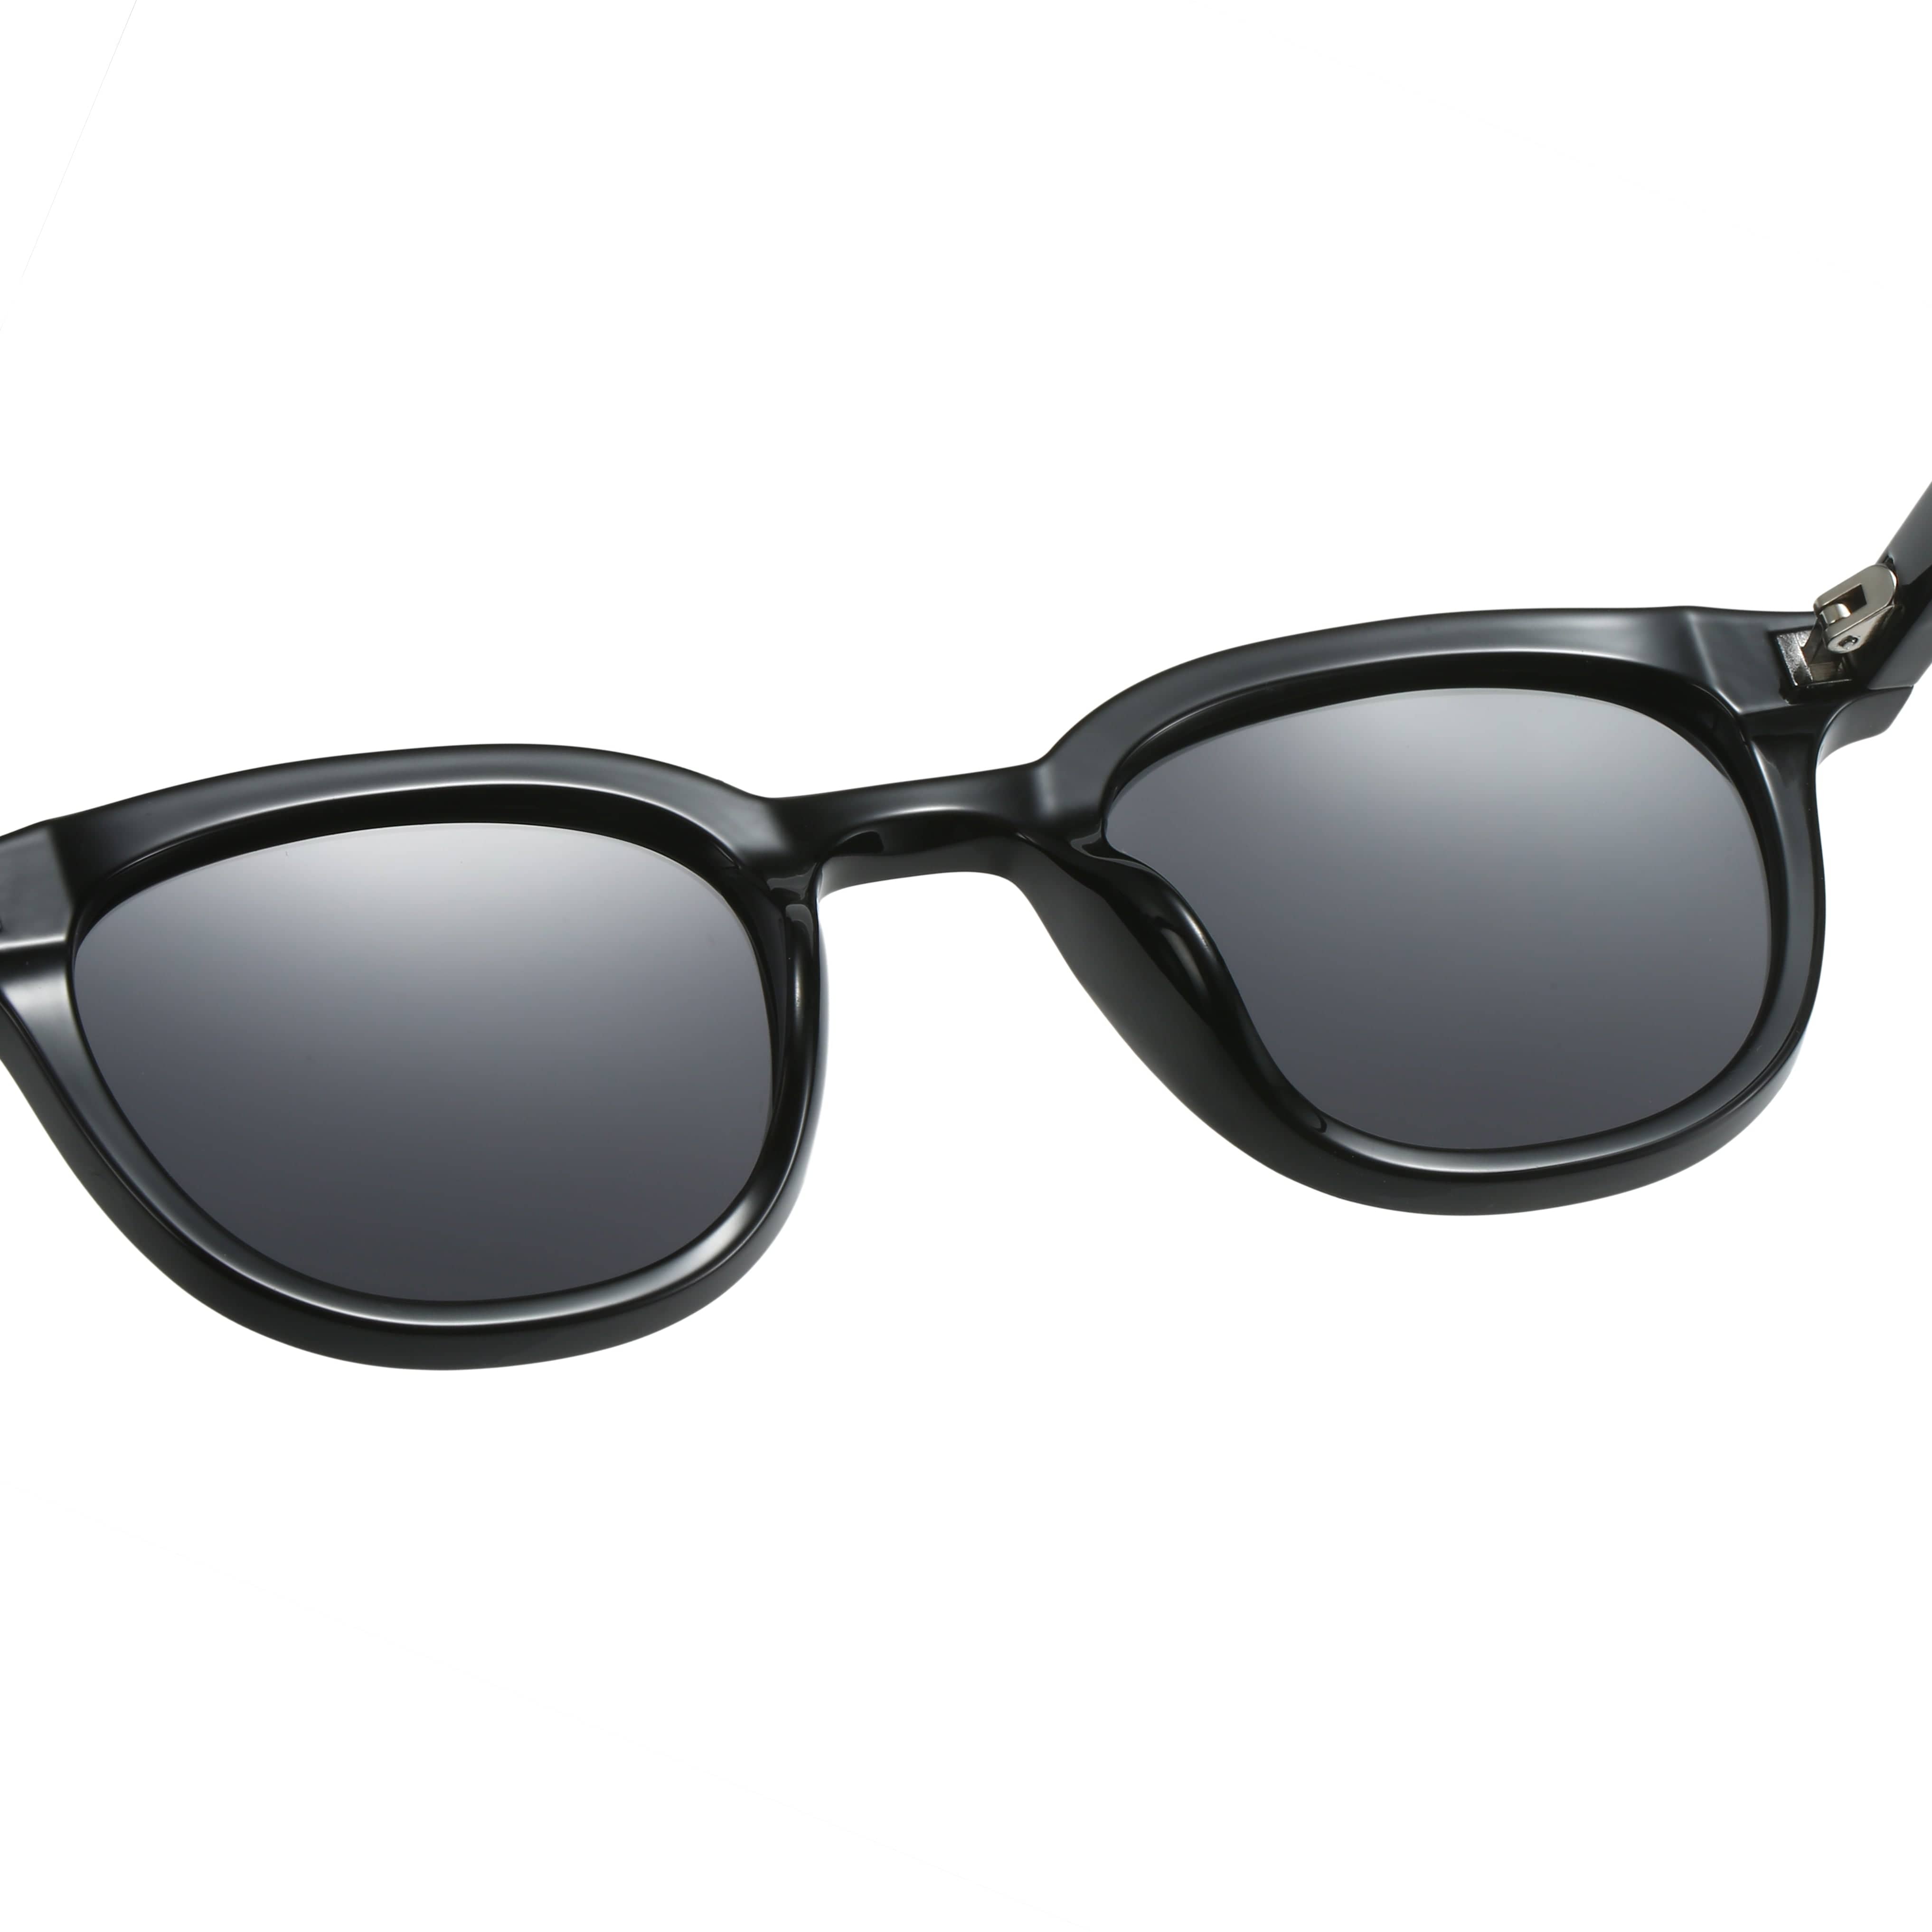 GIUSTIZIERI VECCHI Sunglasses Small / Black ChicCharmante Uno